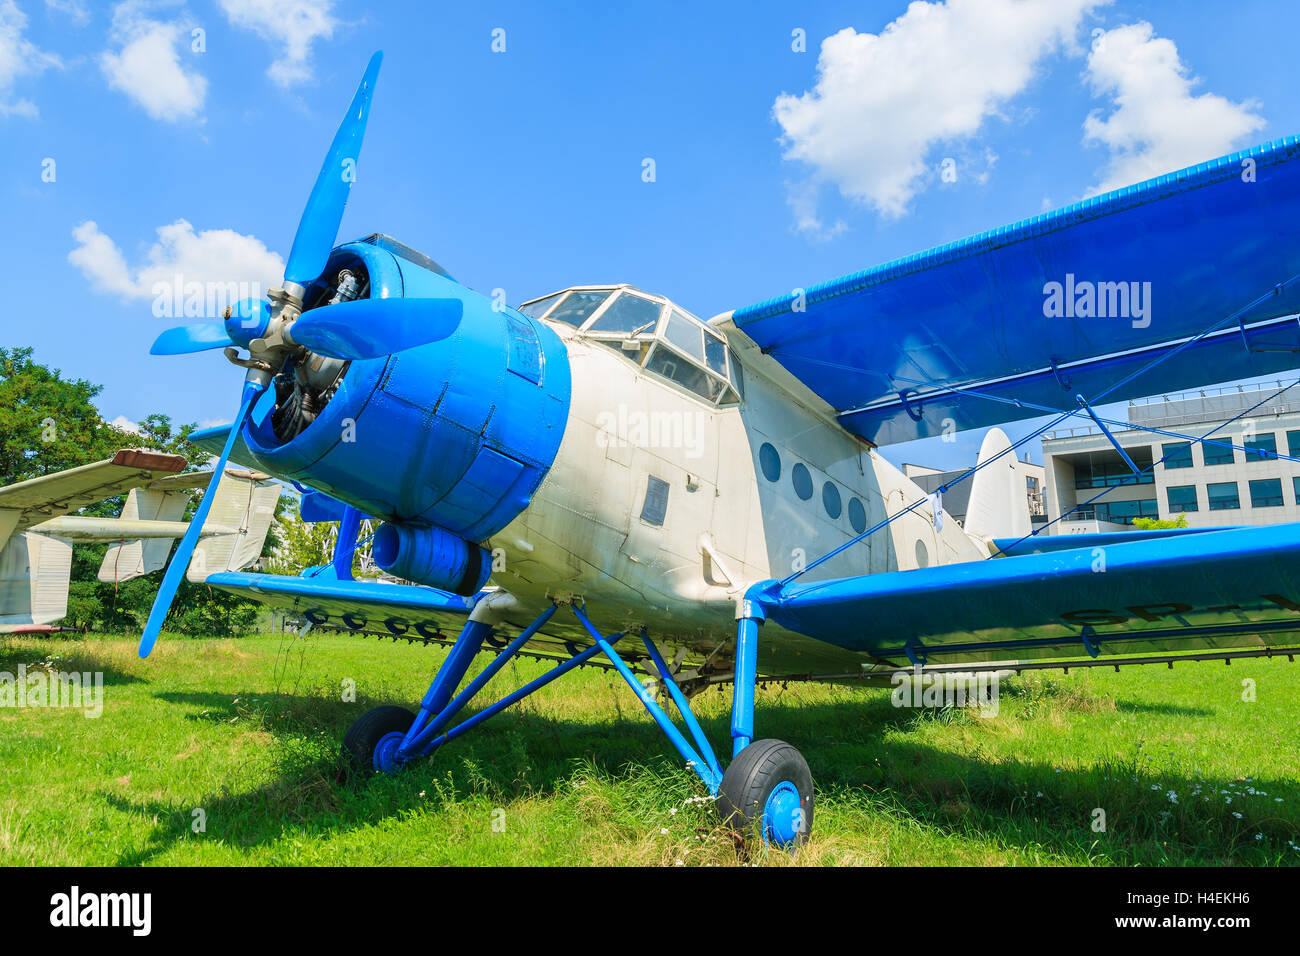 Ancien bleu et blanc sur les aéronefs en exposition musée de plein air de l'histoire de l'aviation à Cracovie, Pologne. Banque D'Images